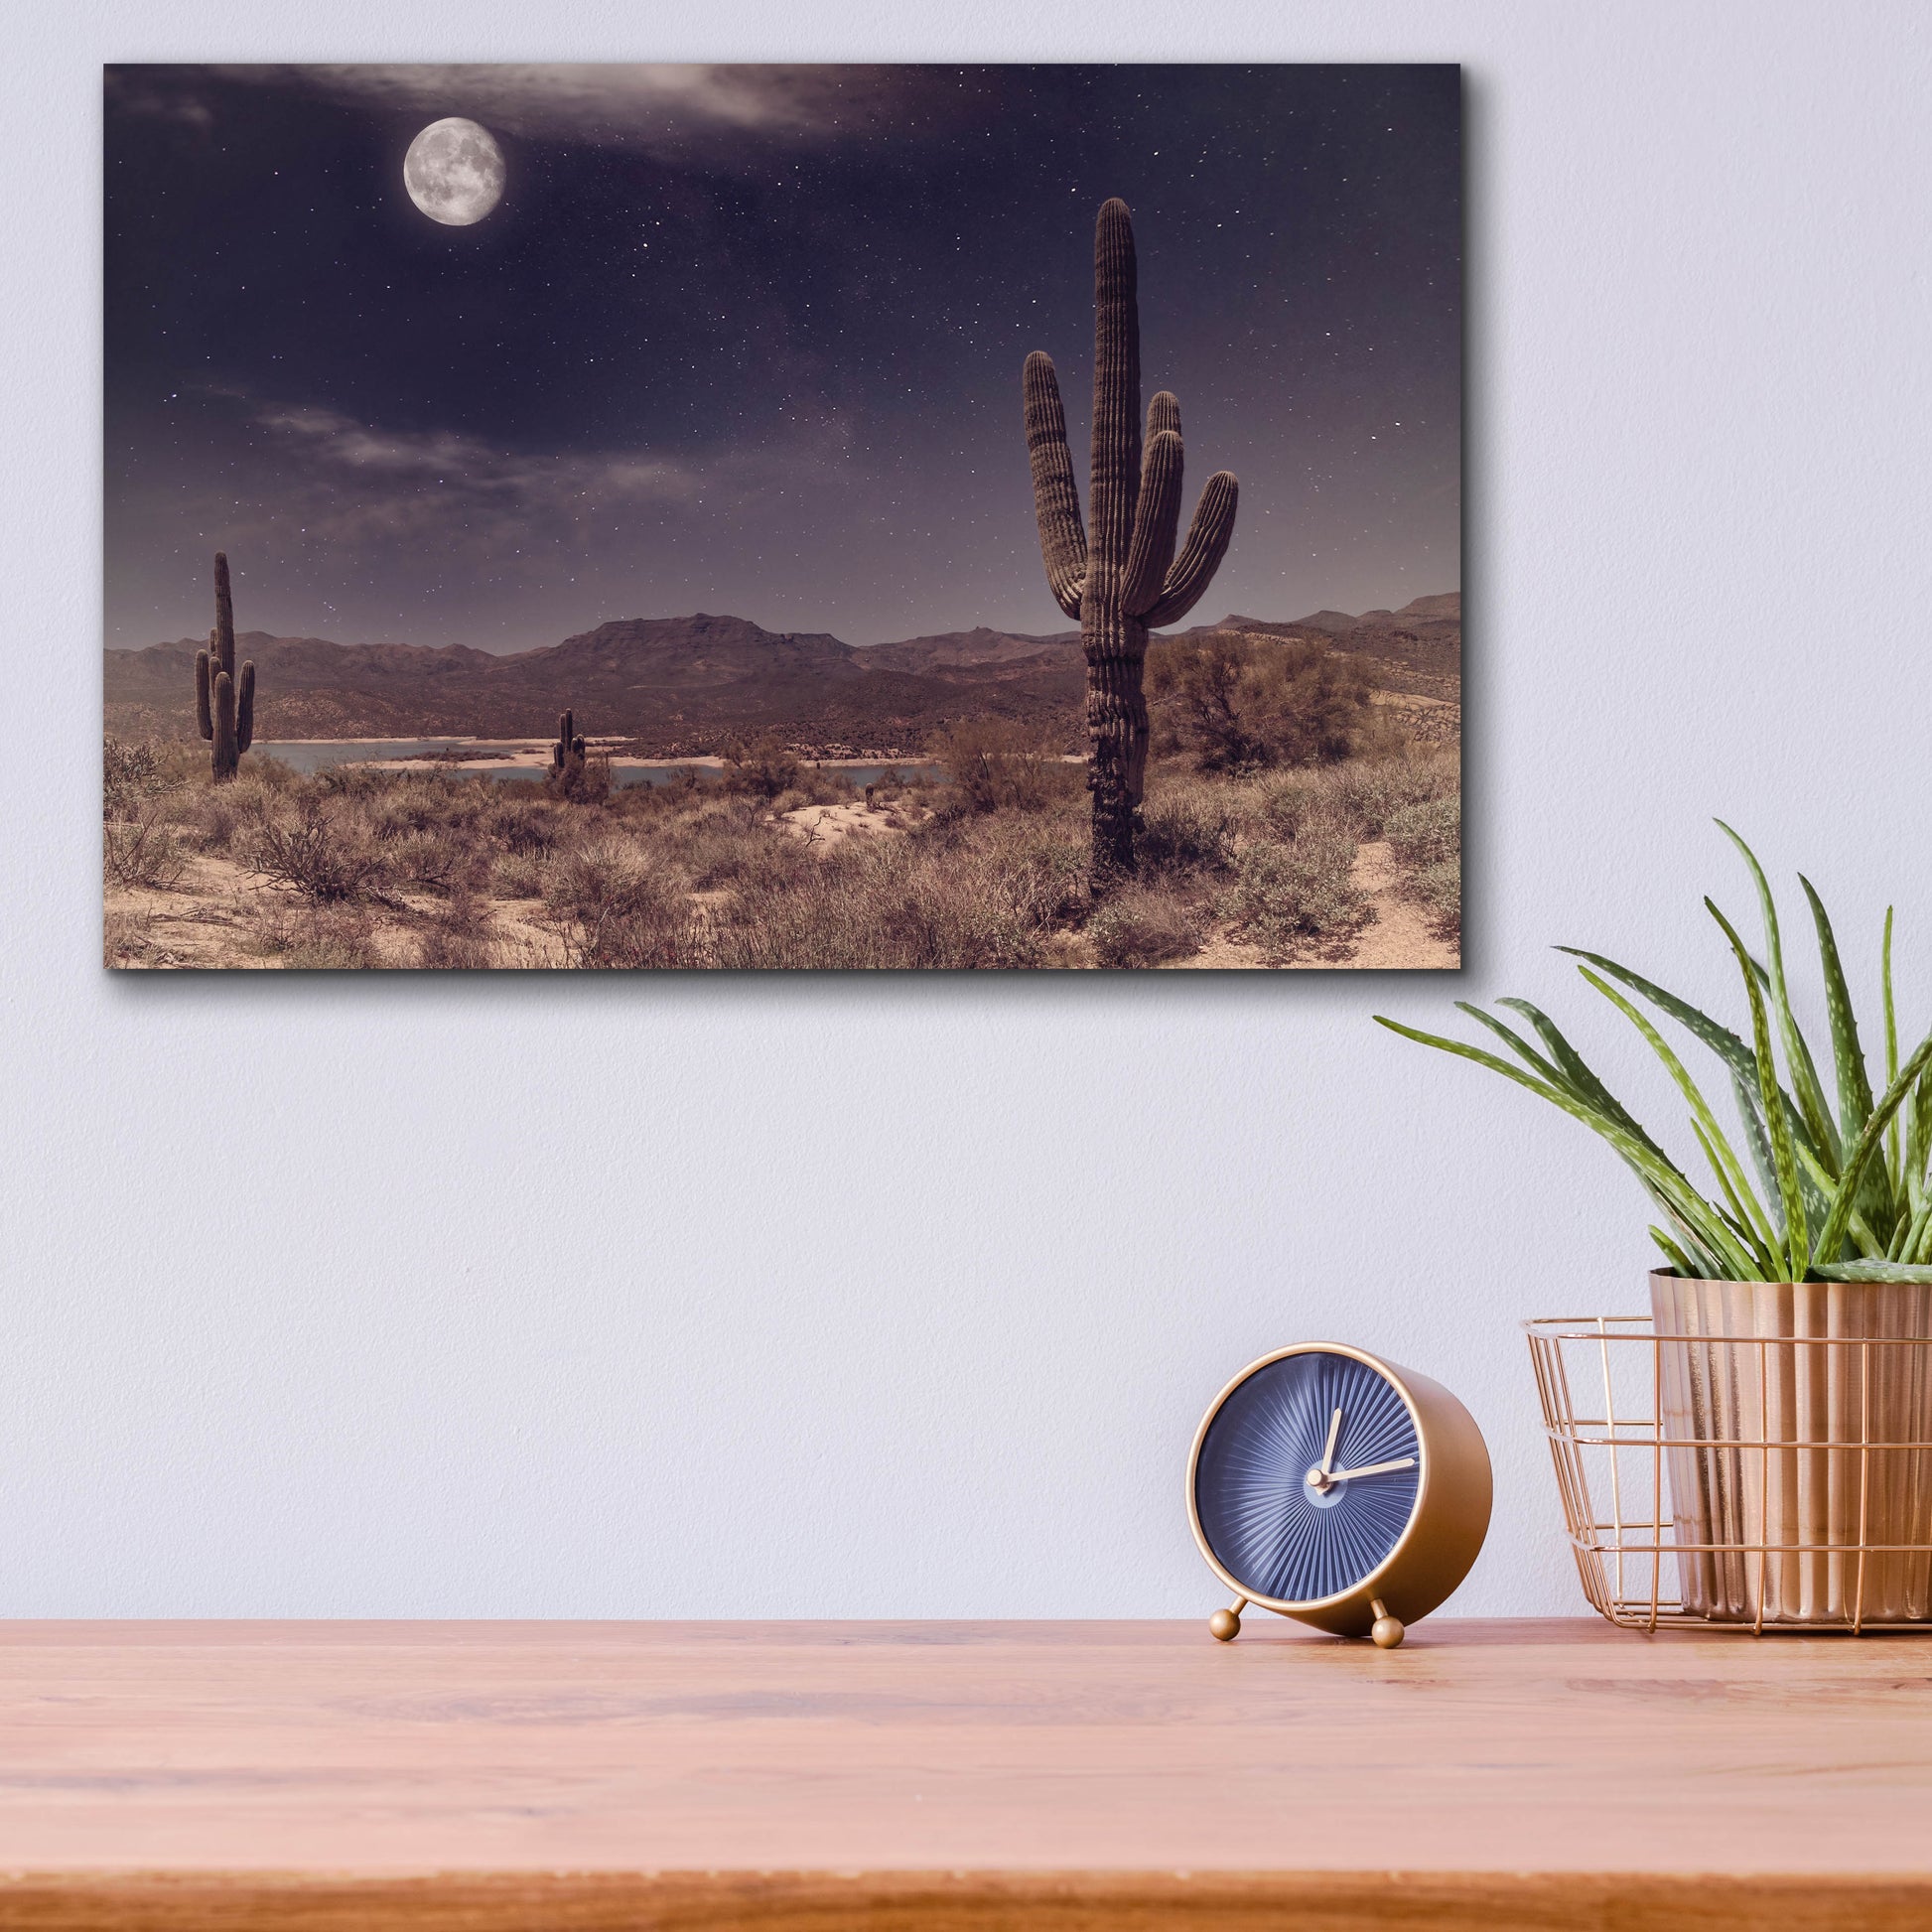 Epic Art 'Desert Moon' by Rick Berk, Acrylic Glass Wall Art,16x12